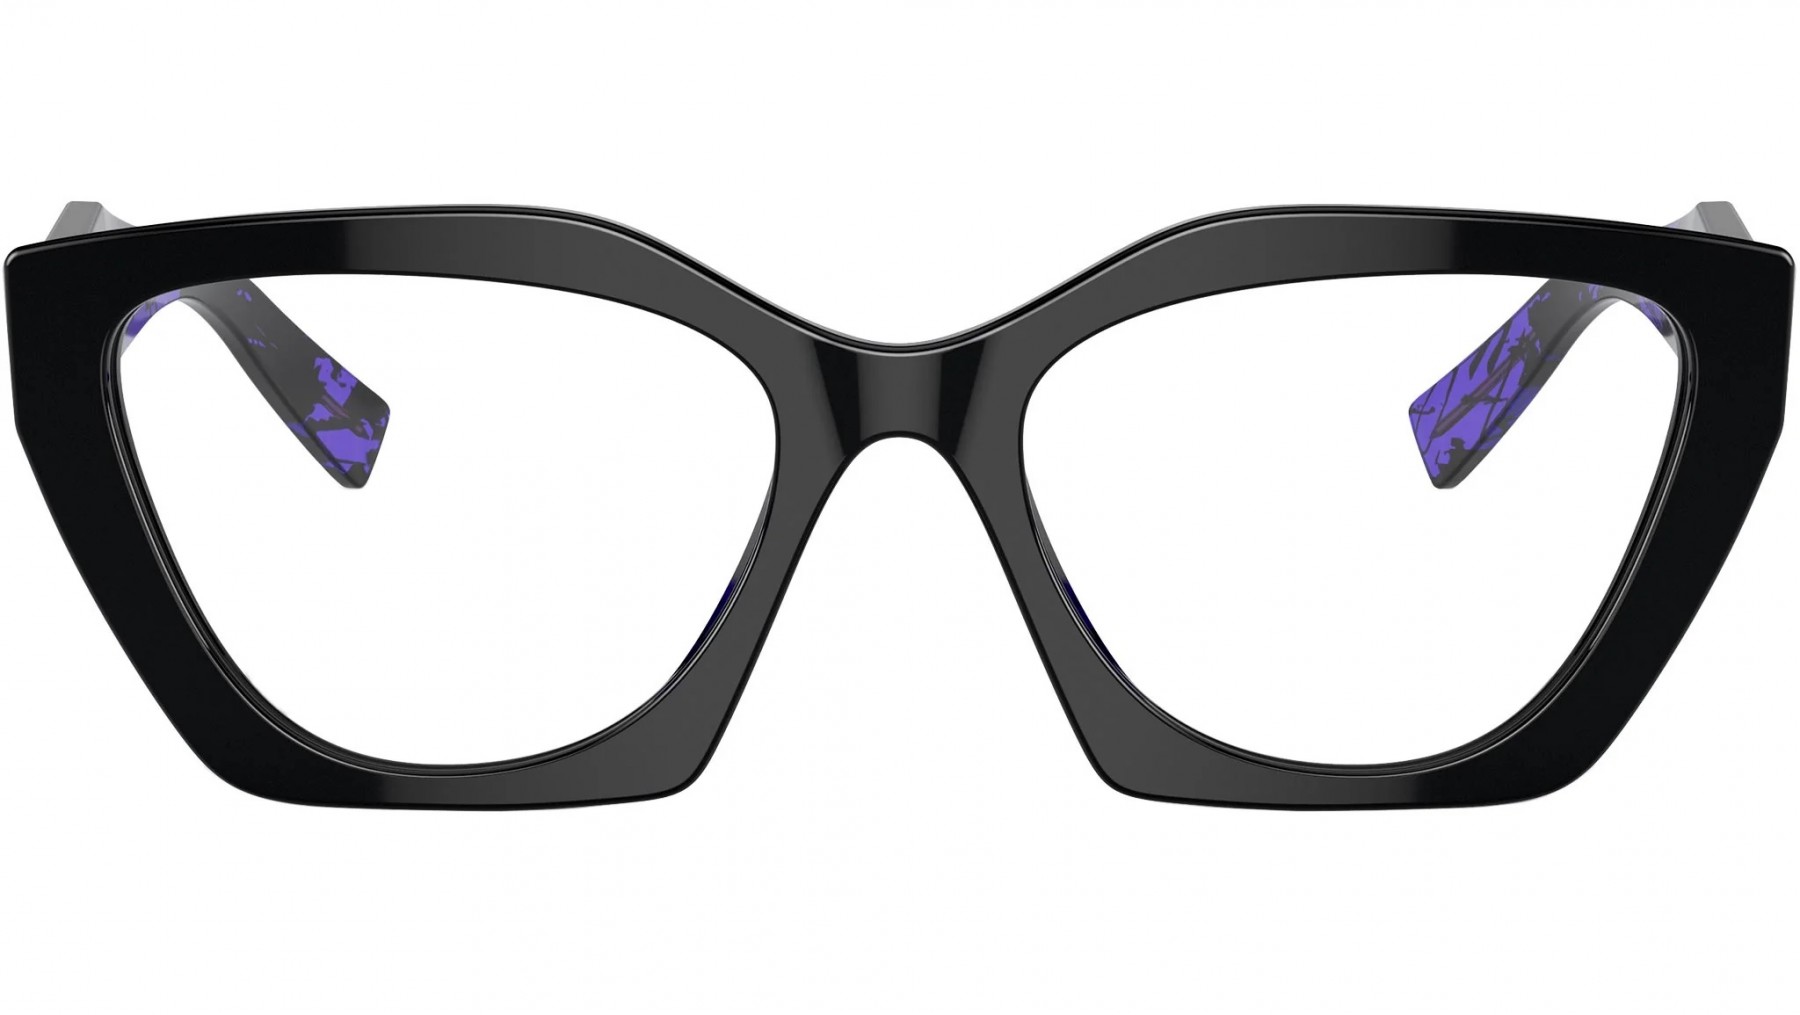 Prada 09YV 19S1O1 - Oculos de Grau